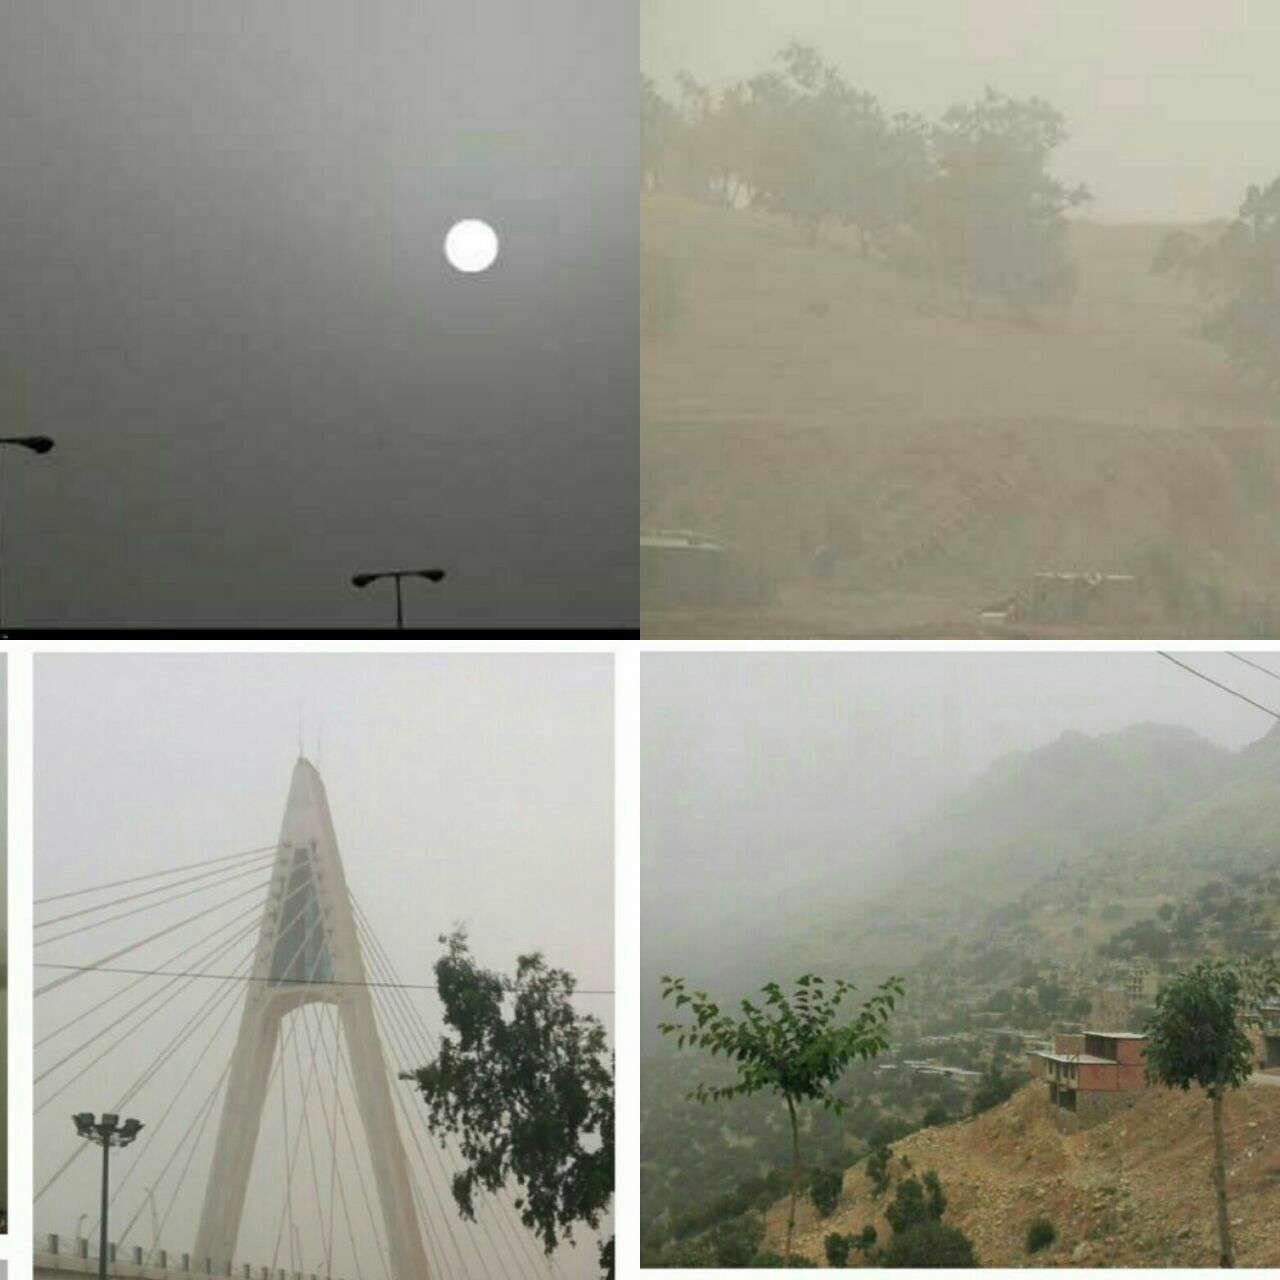 نمایی از آلودگی هوا در چهار شهر
قصر شیرین، اورامان، کرمانشاه و اهواز